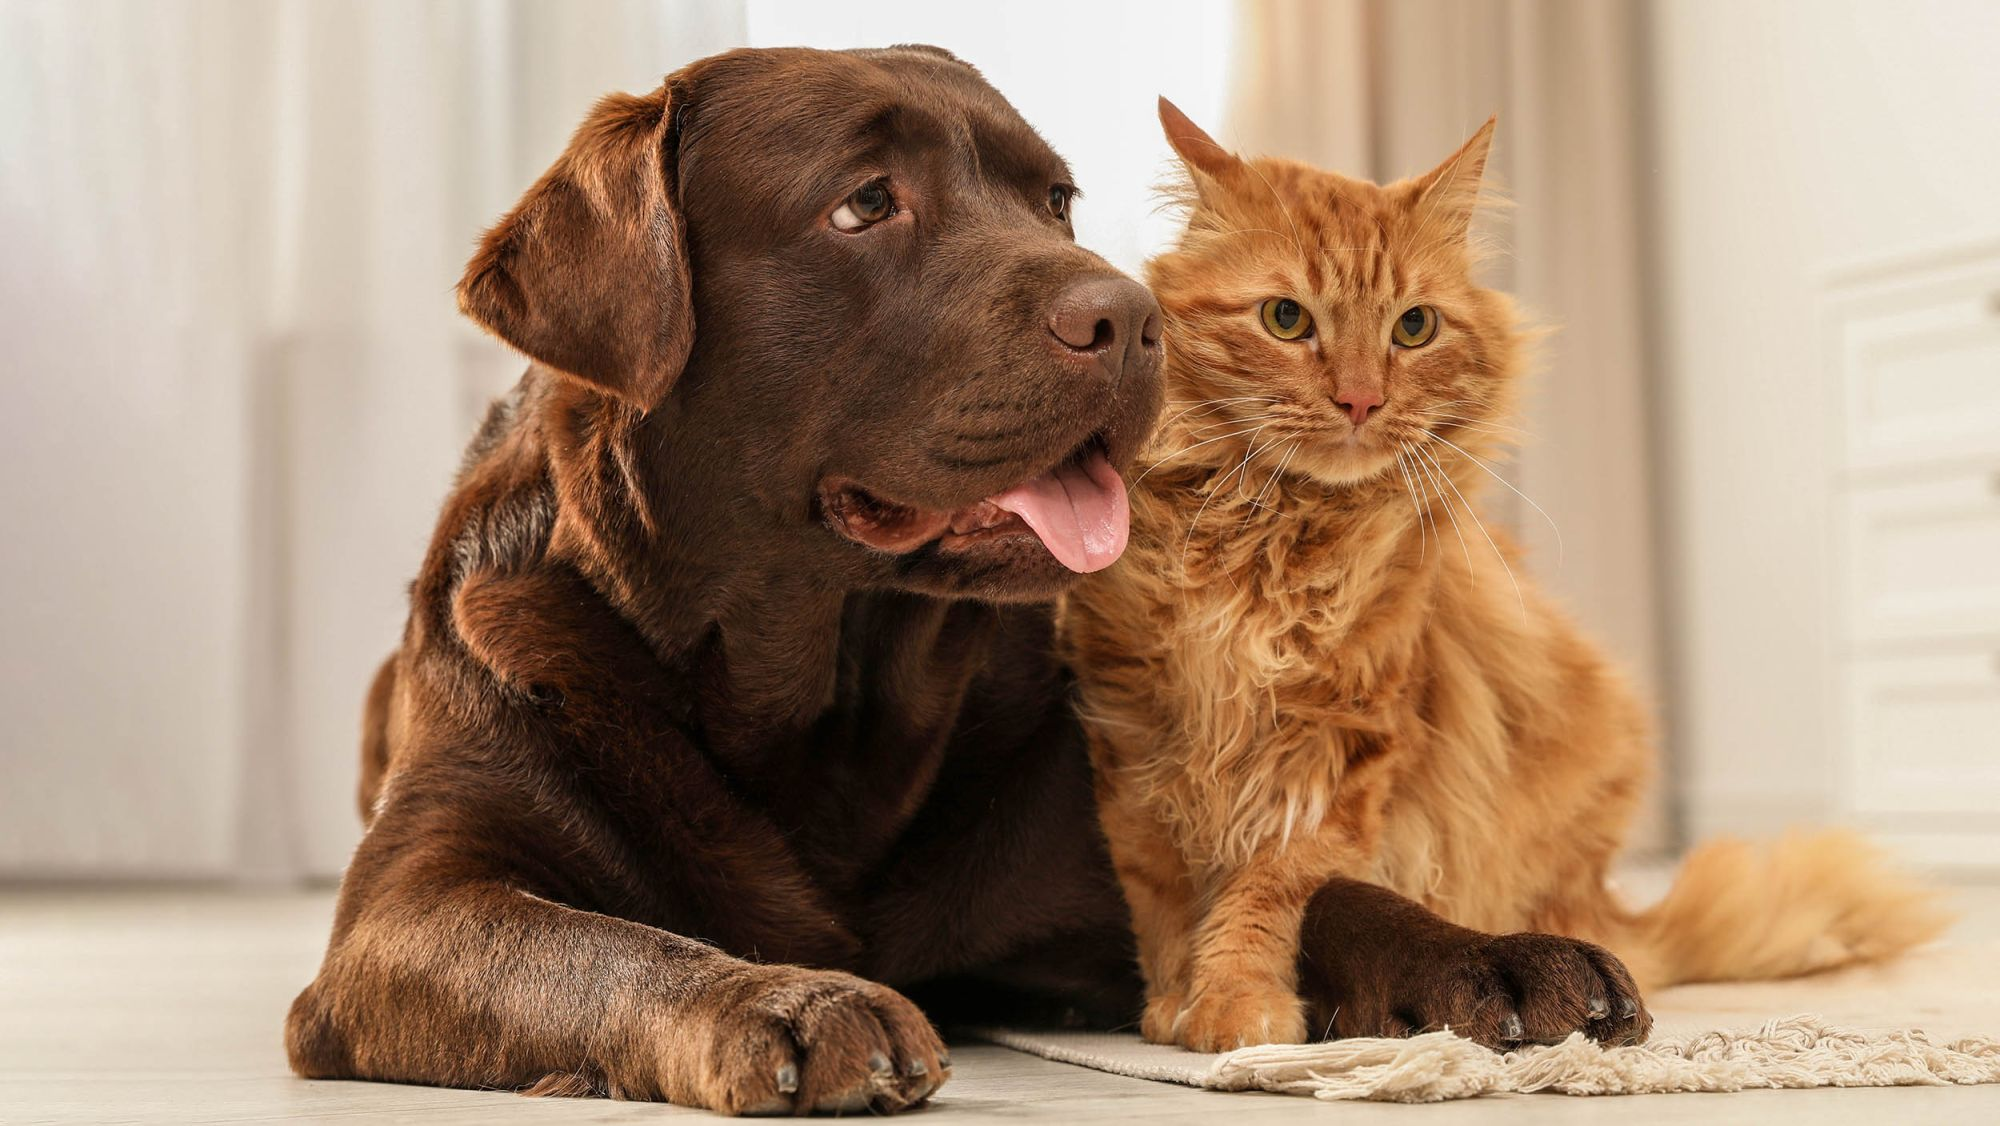 Erwachsener brauner Labrador Retriever und rote Katze liegen im Innenbereich auf einem weißen Teppich